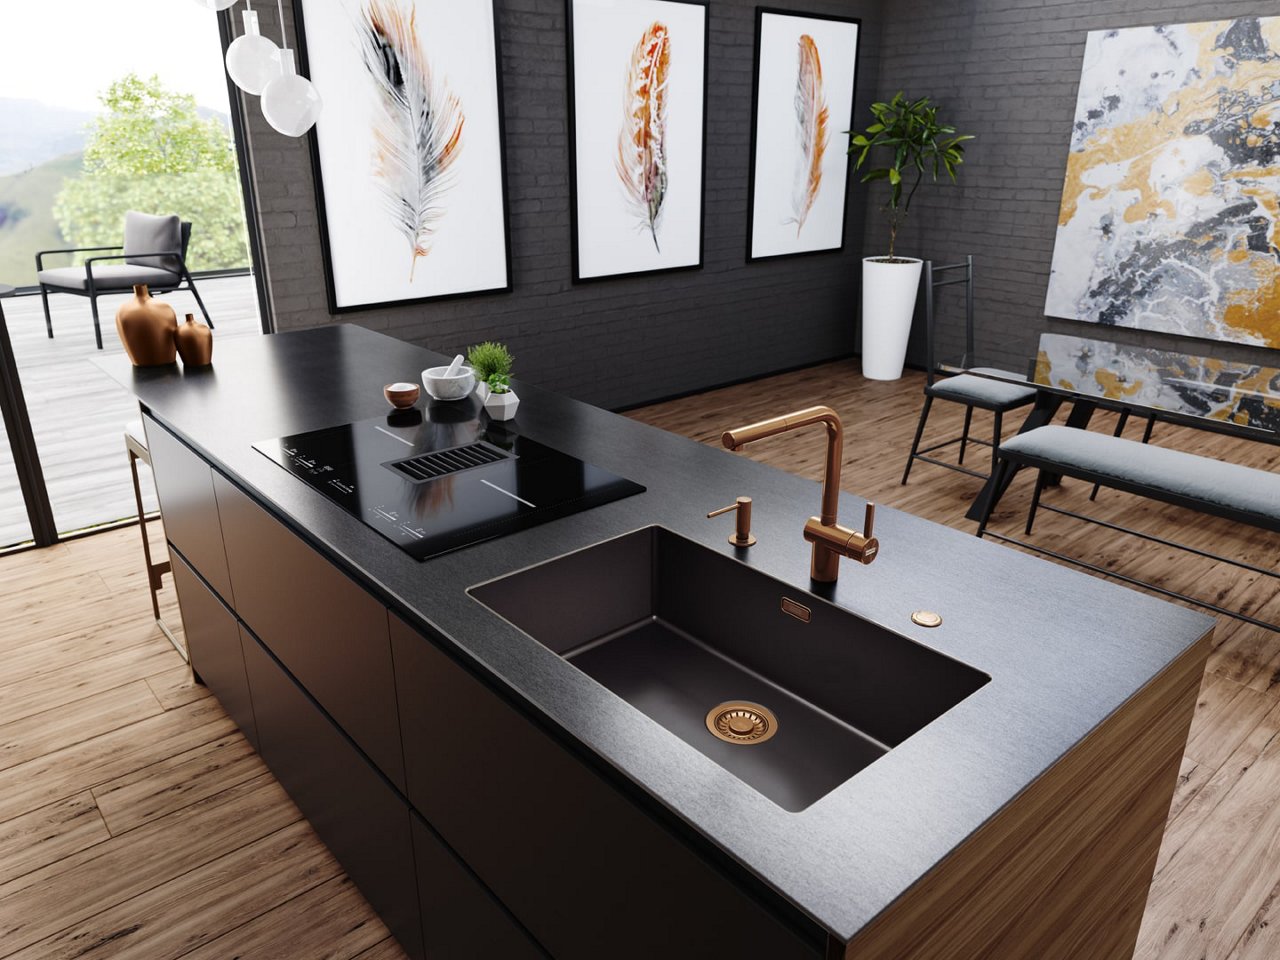 Keuken met zwart werkblad en bronzen keukenkraan